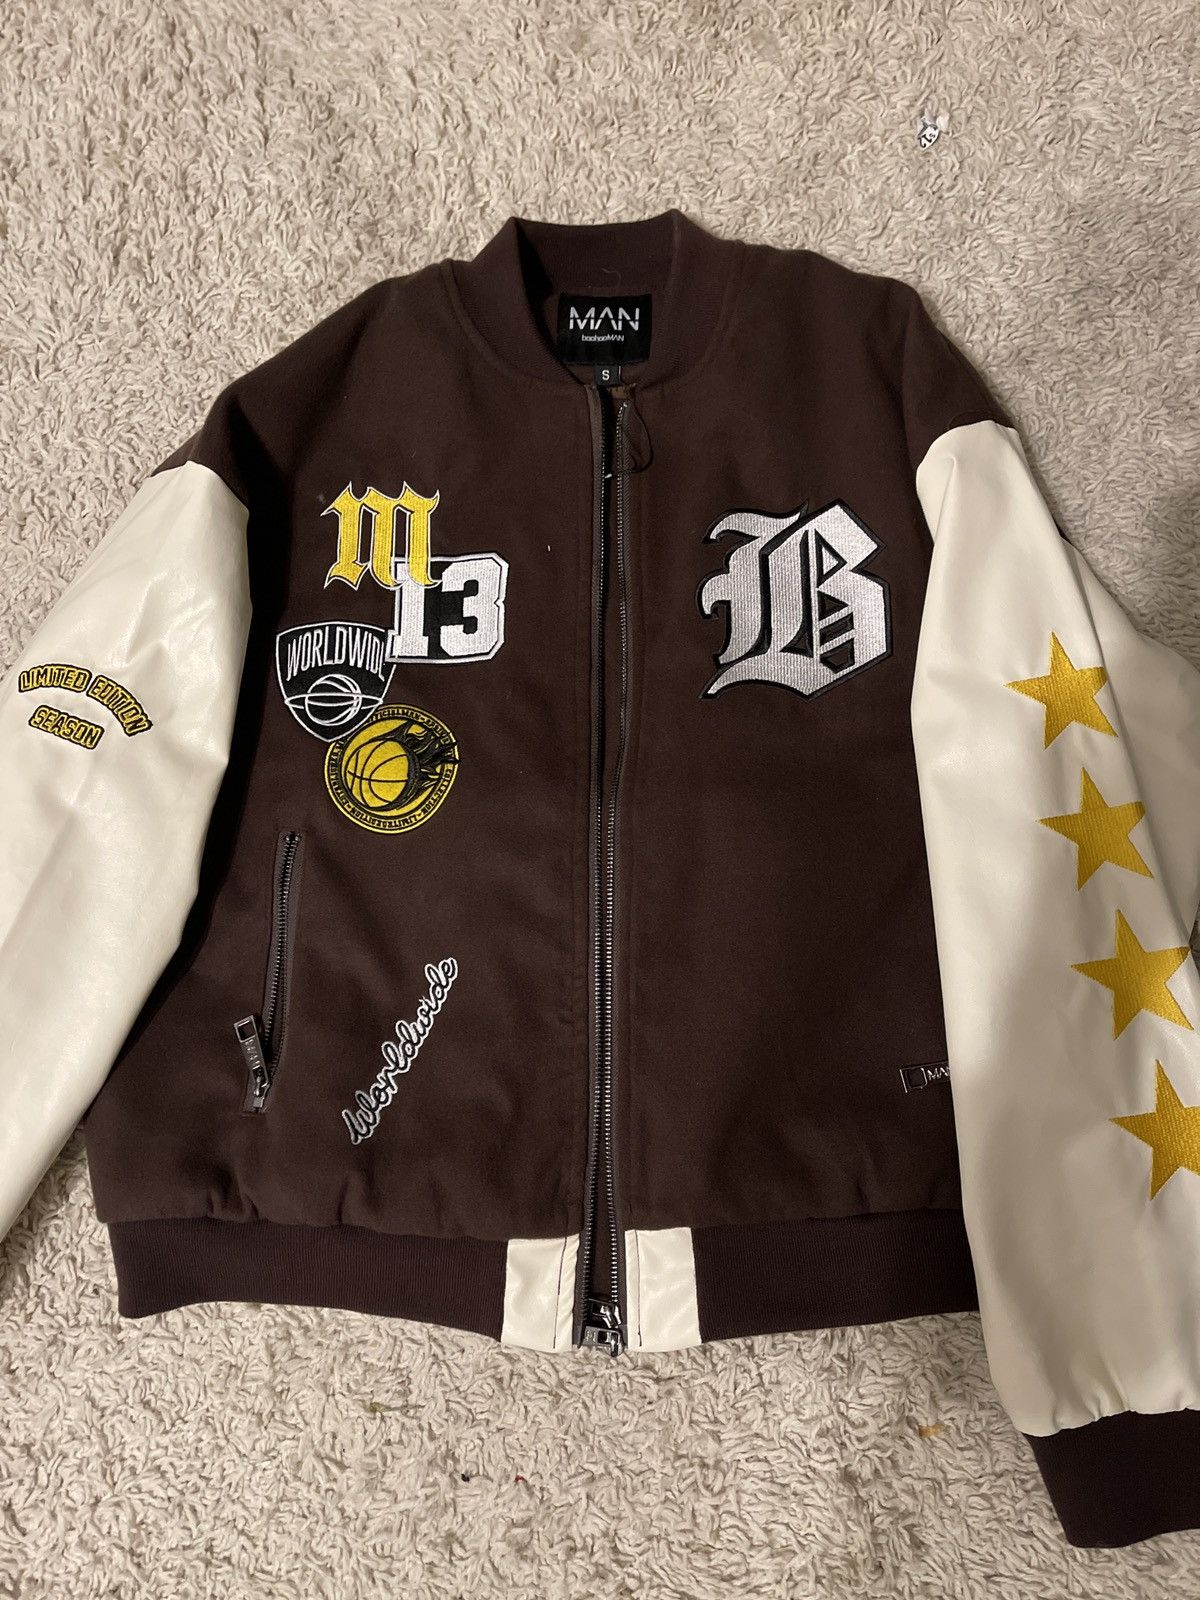 Boohoo Limited edition LA varsity jacket | Grailed